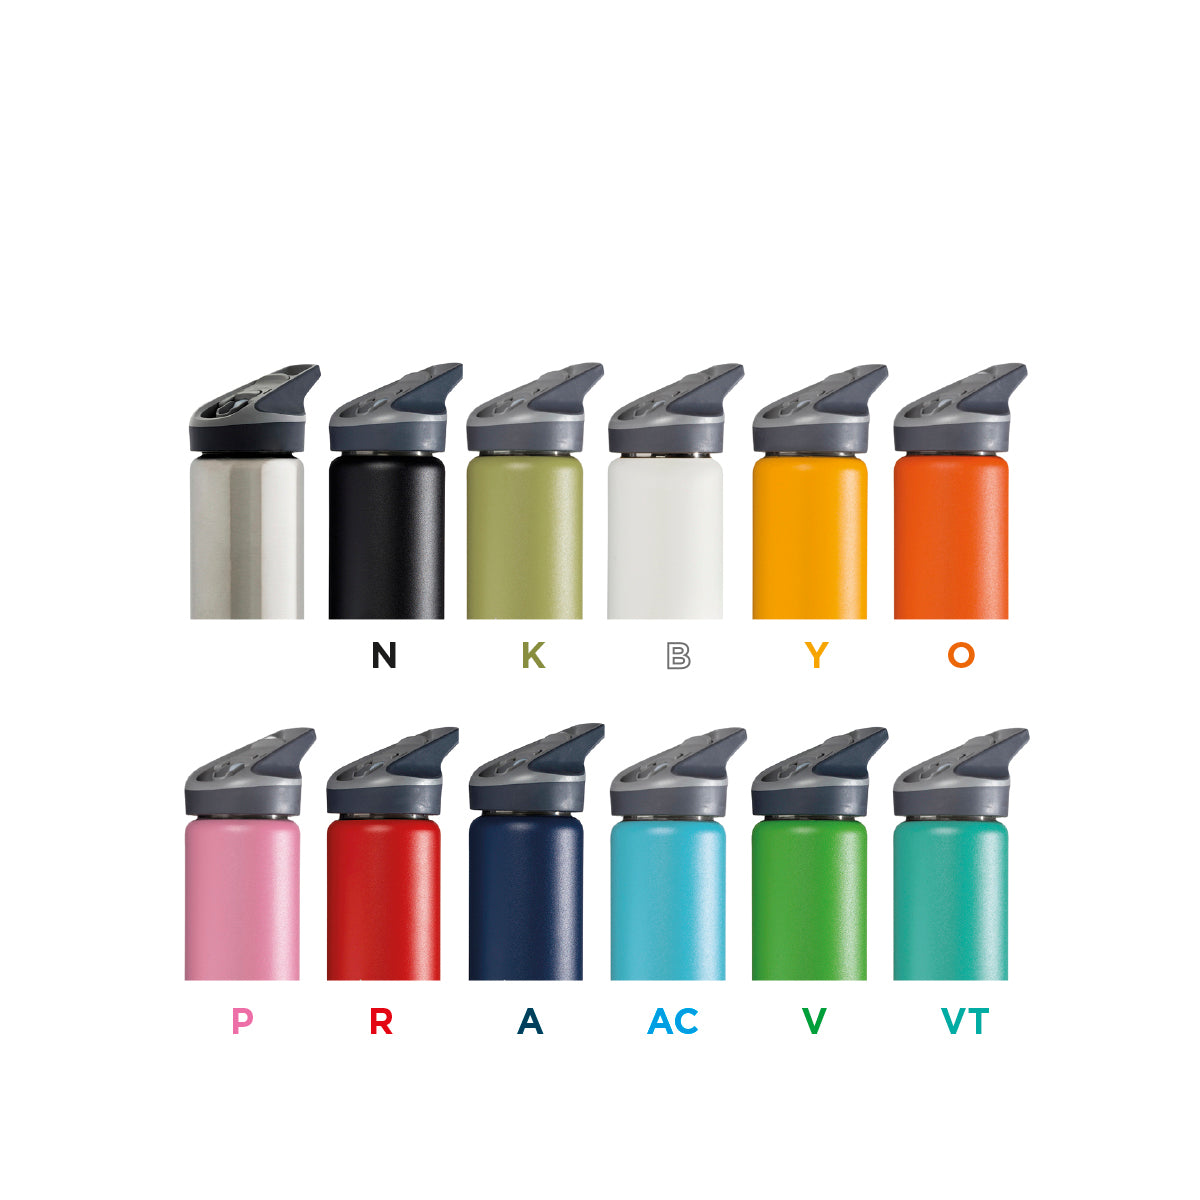 Laken RVS drinkfles Thermic Jannu - Diverse kleuren Laken